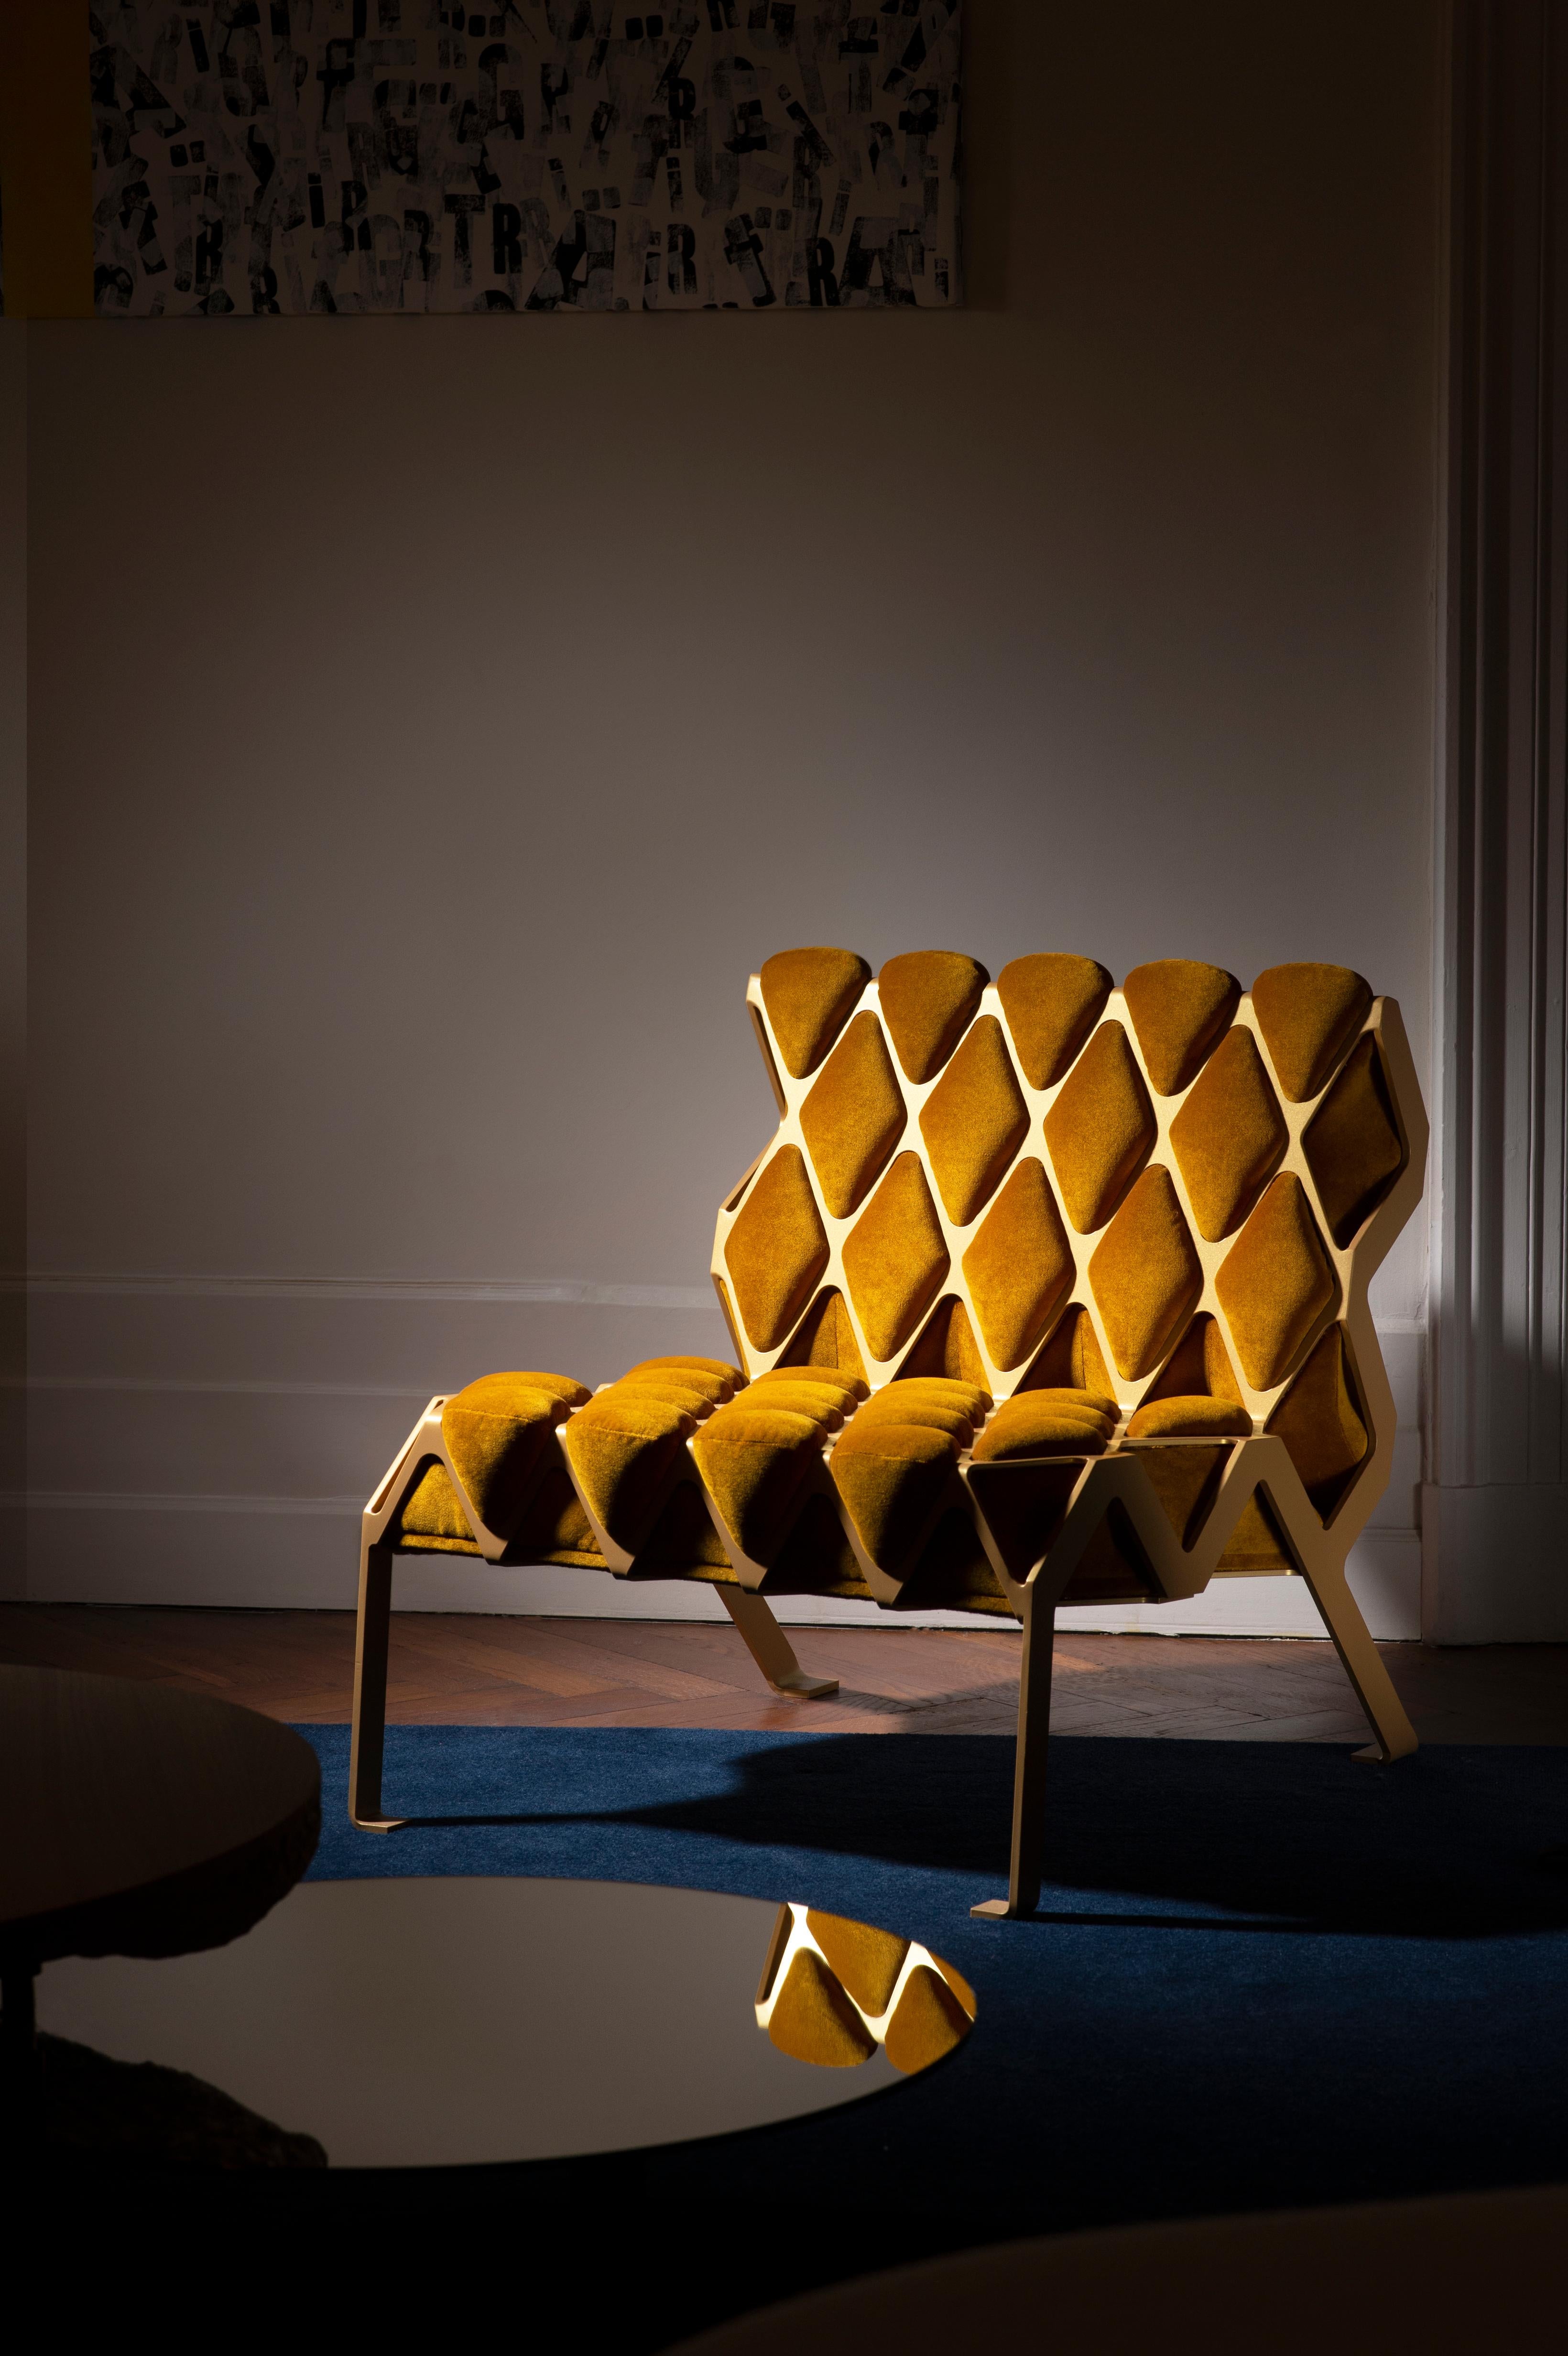 La chaise Matrice est un subtil corset d'acier qui comprime un matériau doux et confortable ; un joli rappel du savoir-faire traditionnel italien, lorsque le verre soufflé assemblait la structure métallique de la lampe au début du 20e siècle. 

La